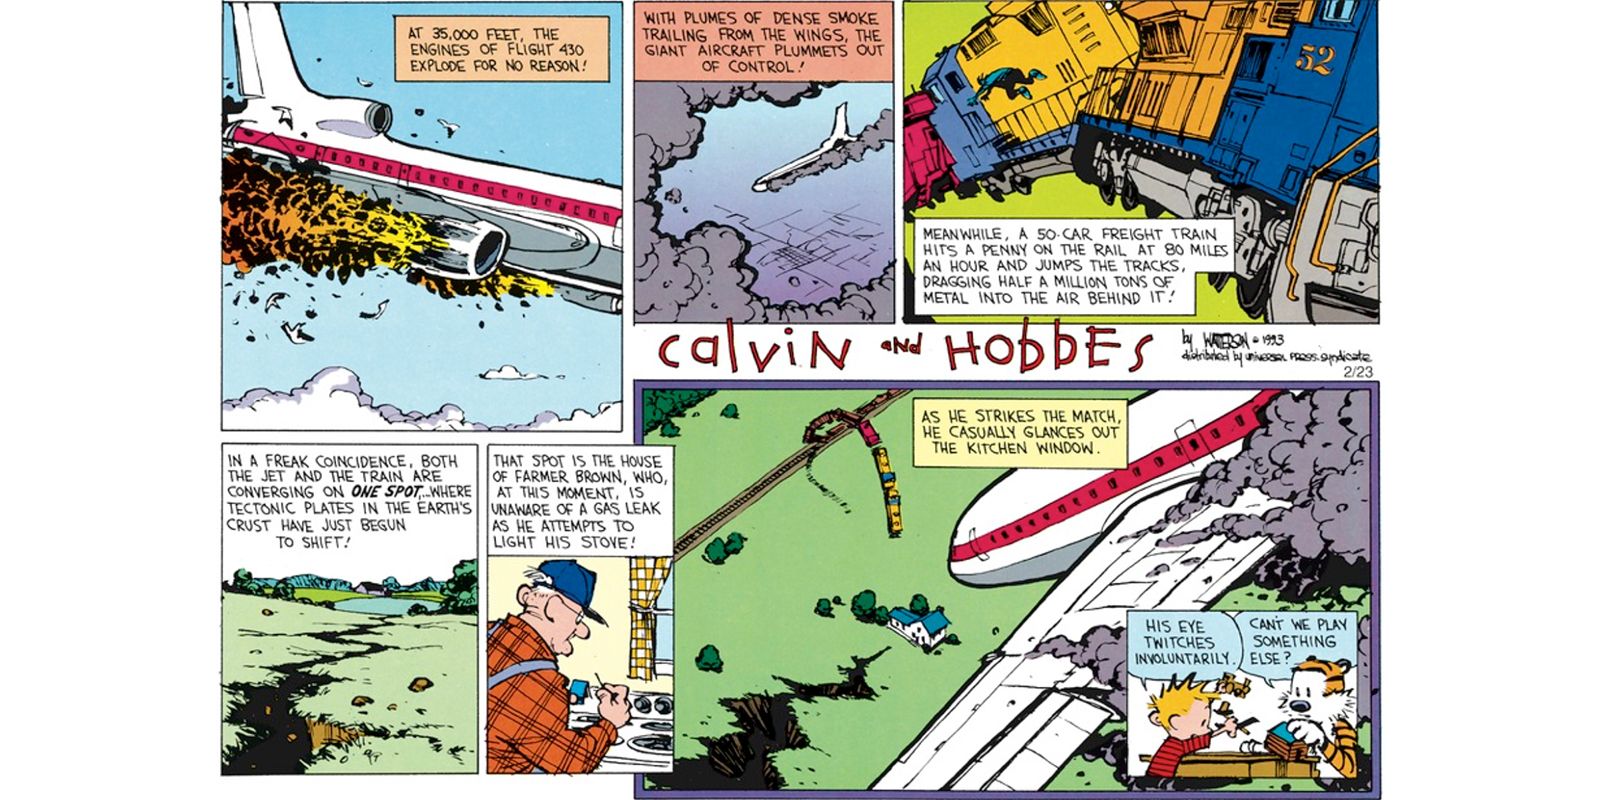 Enquanto joga, Calvin imagina um avião e um trem colidindo com uma casa durante um terremoto e vazamento de gás